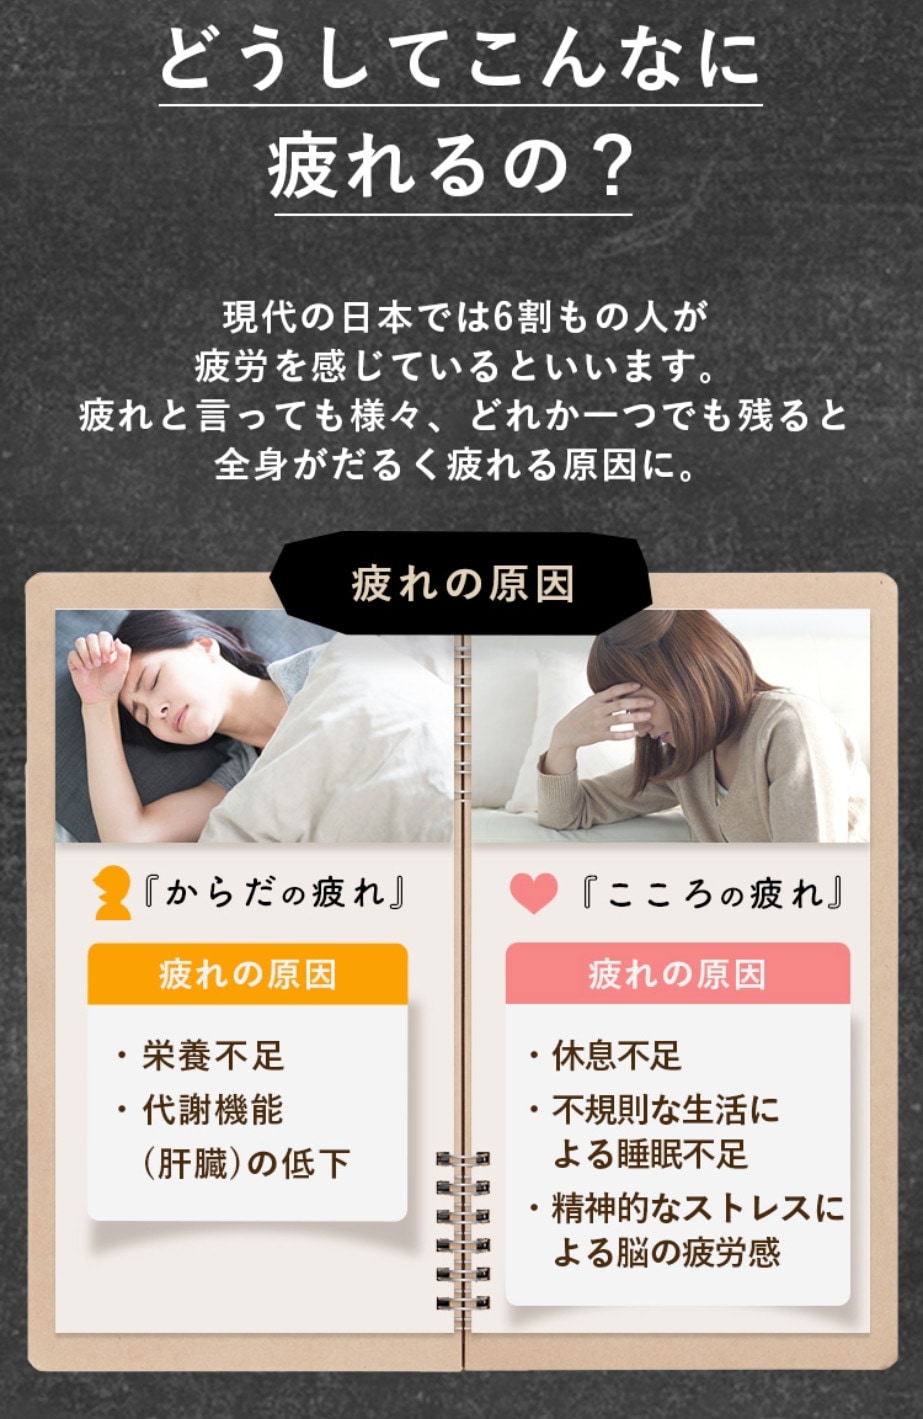 どうしてこんなに疲れるの？現代の日本では6割もの人が疲労を感じているといいます。疲れと言っても様々、どれかひとつでも残ると全身がだるく疲れる原因に。
疲れの原因：『からだの疲れ』疲れの原因は栄養不足、代謝機能（肝臓）の低下。『こころの疲れ』疲れの原因は休息不足、不規則な生活による睡眠不足、精神的なストレスによる脳の疲労感。